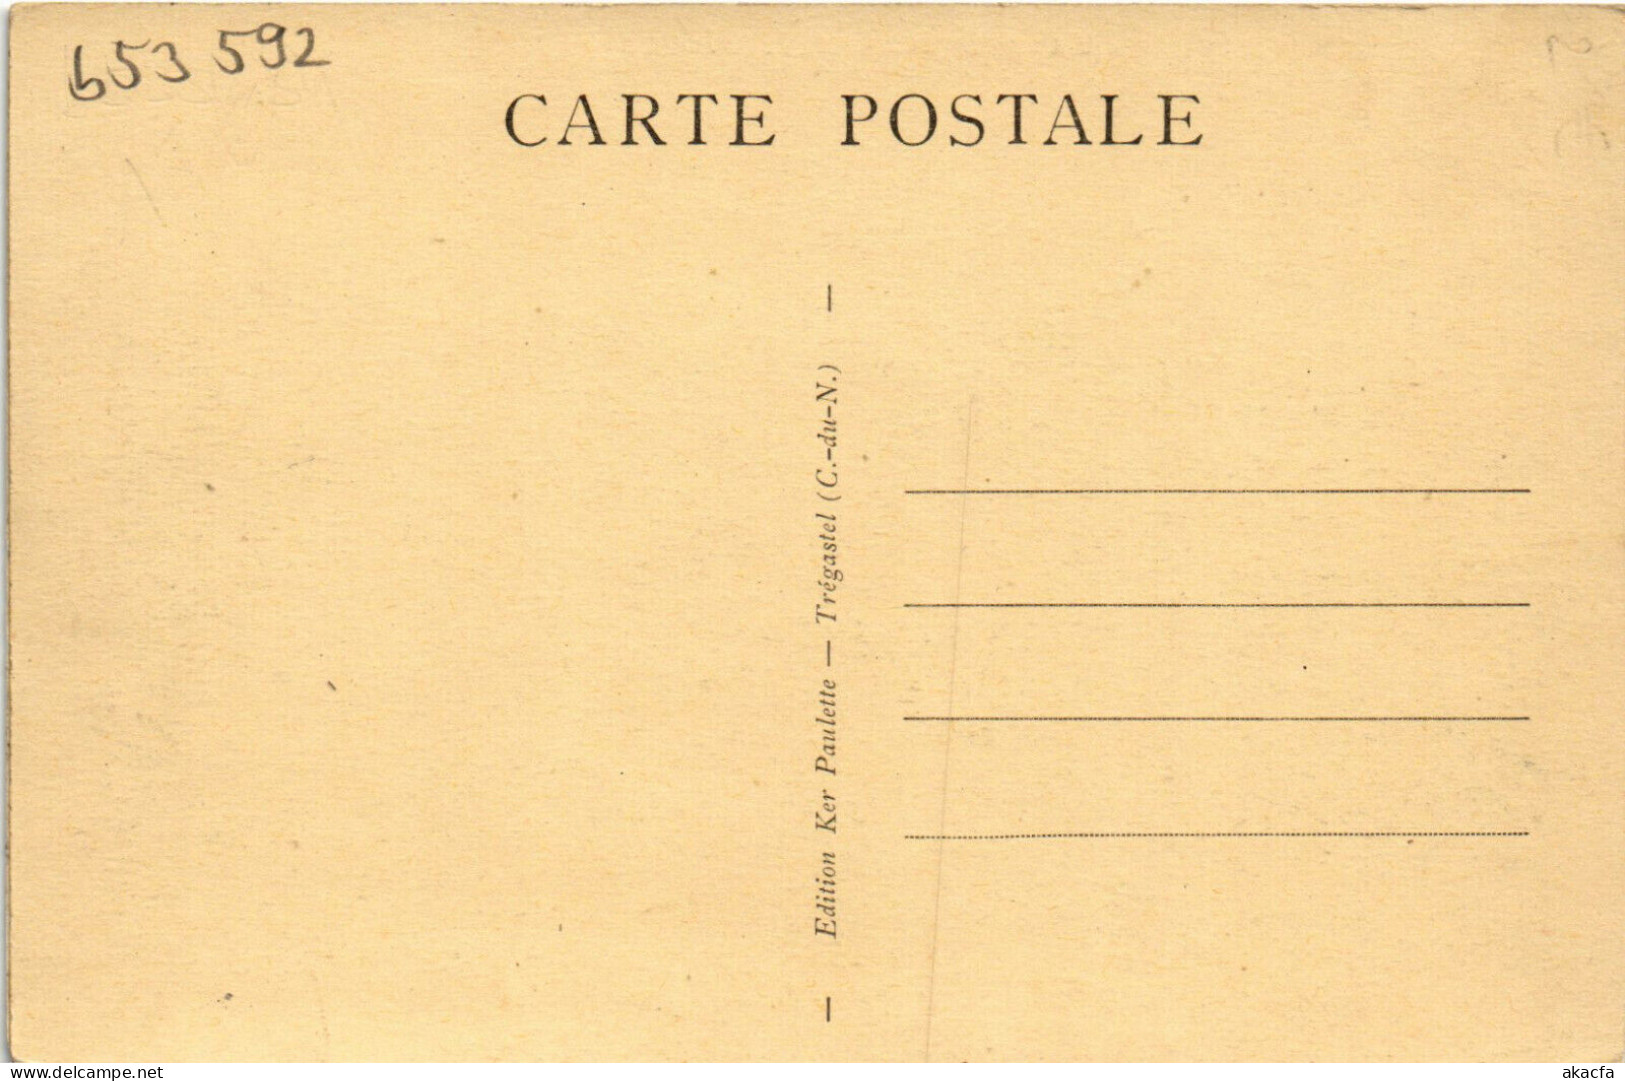 PC NEW GUINEA, NOUMÉA, CANAQUES DE MUÉO, Vintage Postcard (b53592) - Papouasie-Nouvelle-Guinée